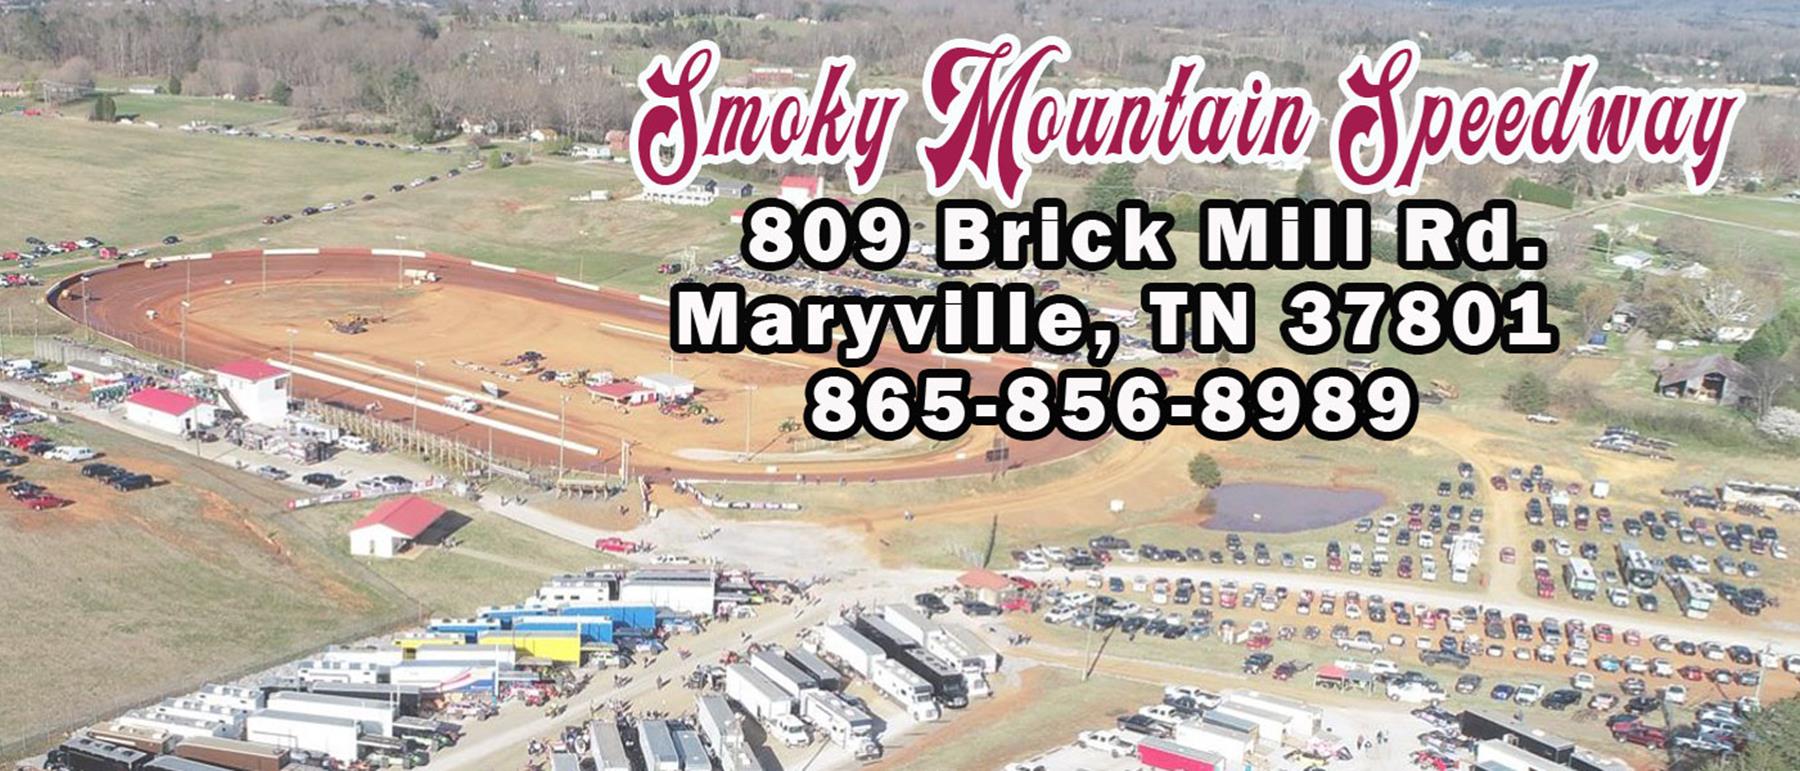 4/22/2023 - Smoky Mountain Speedway on MyRacePass